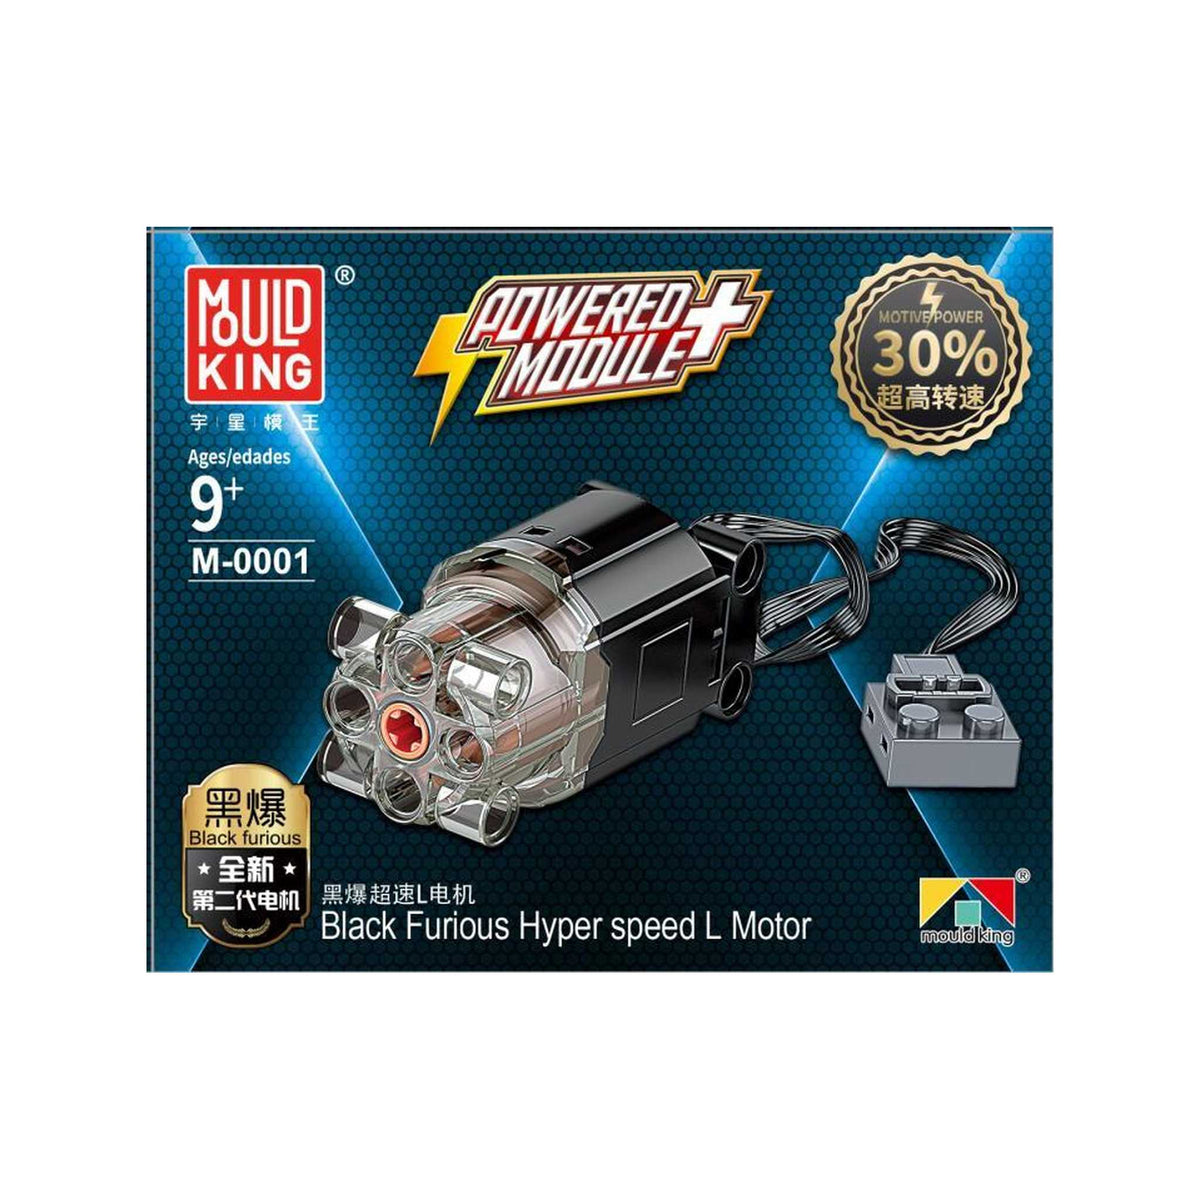 M-00001 - Motor Hyper Speed L (Mould King)